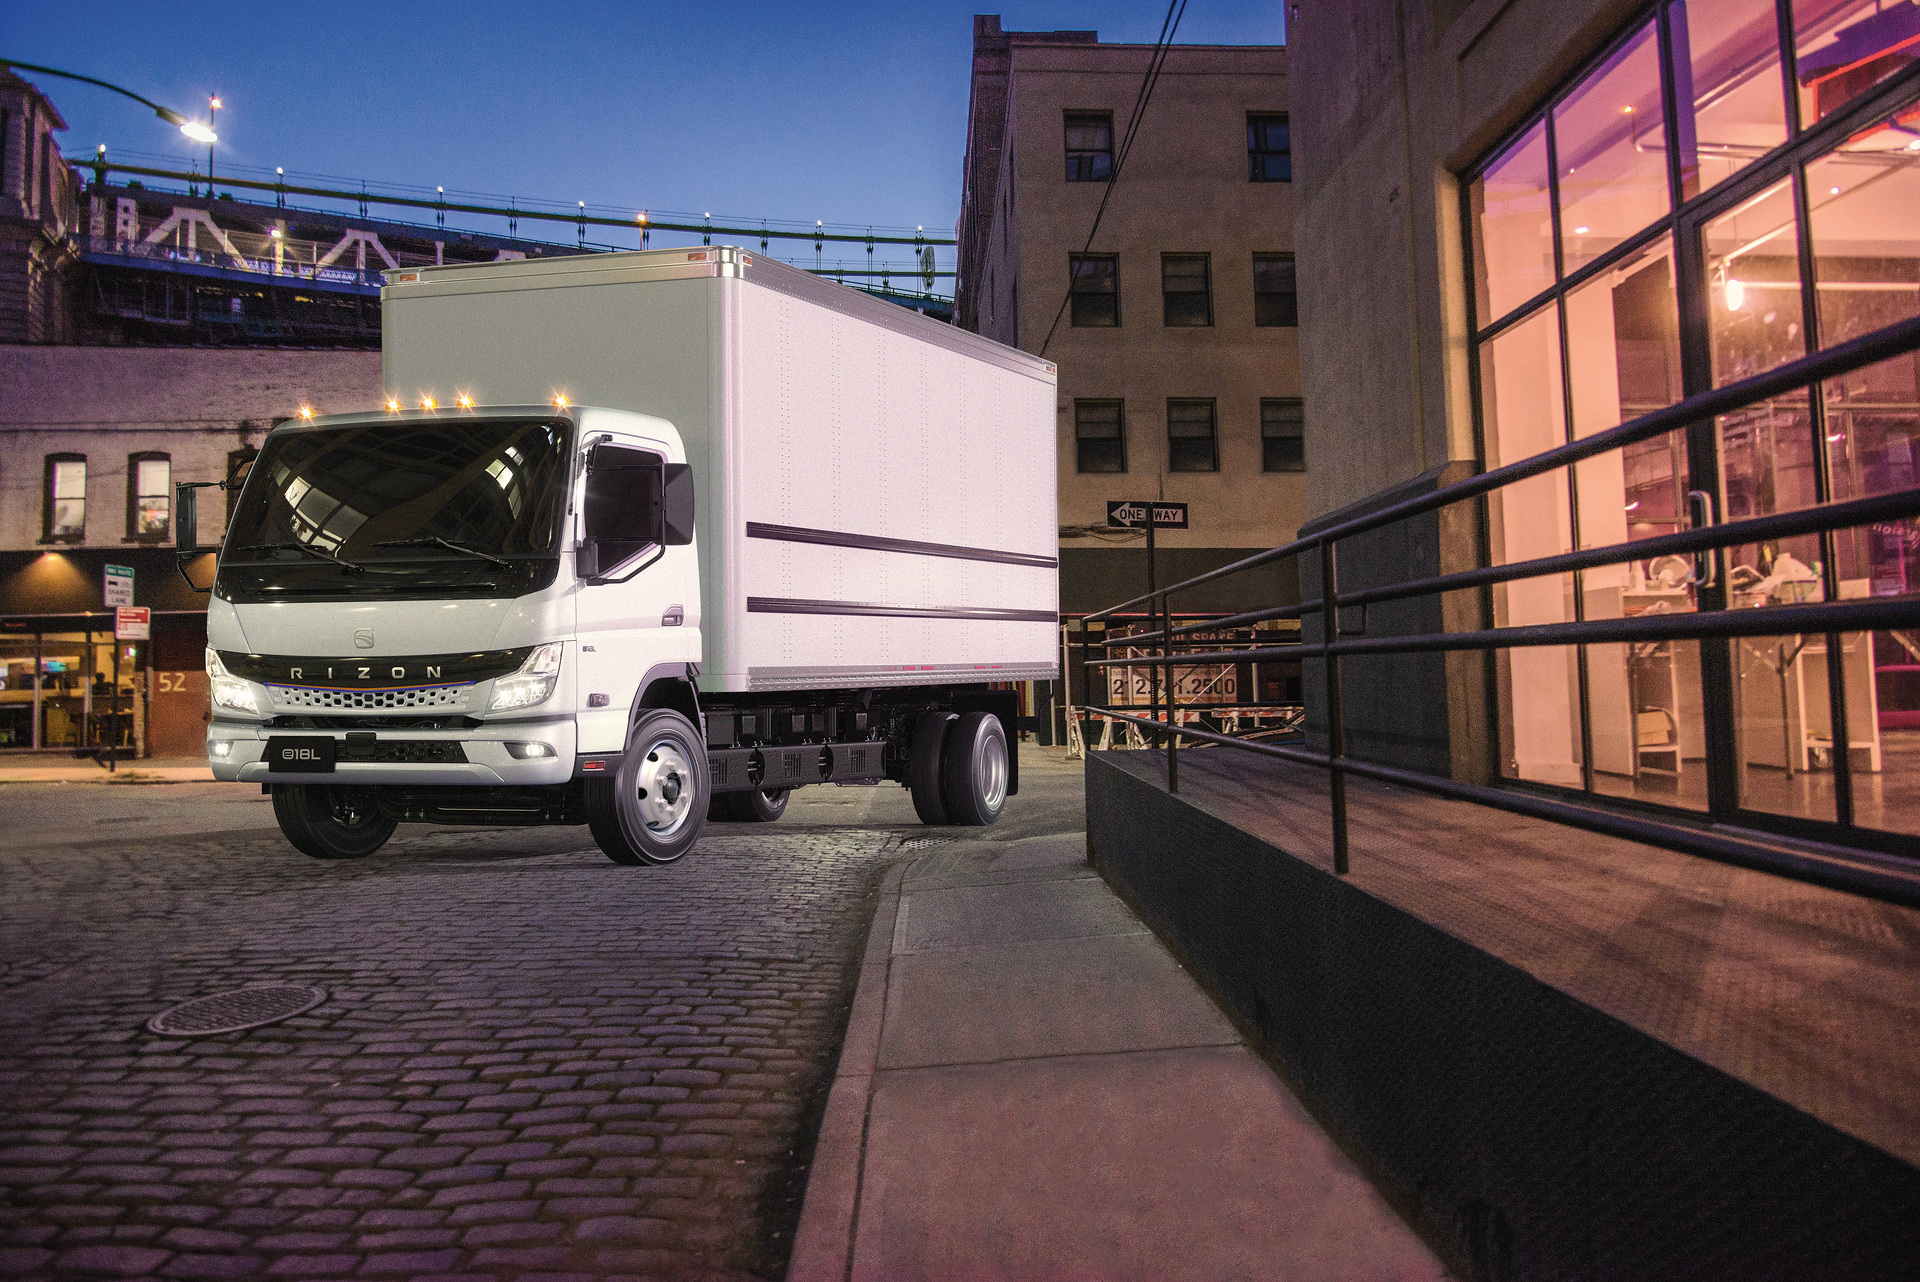 Daimler Truck präsentiert mittelschwere Elektro-Lkw der Marke RIZON für den US-amerikanischen Markt